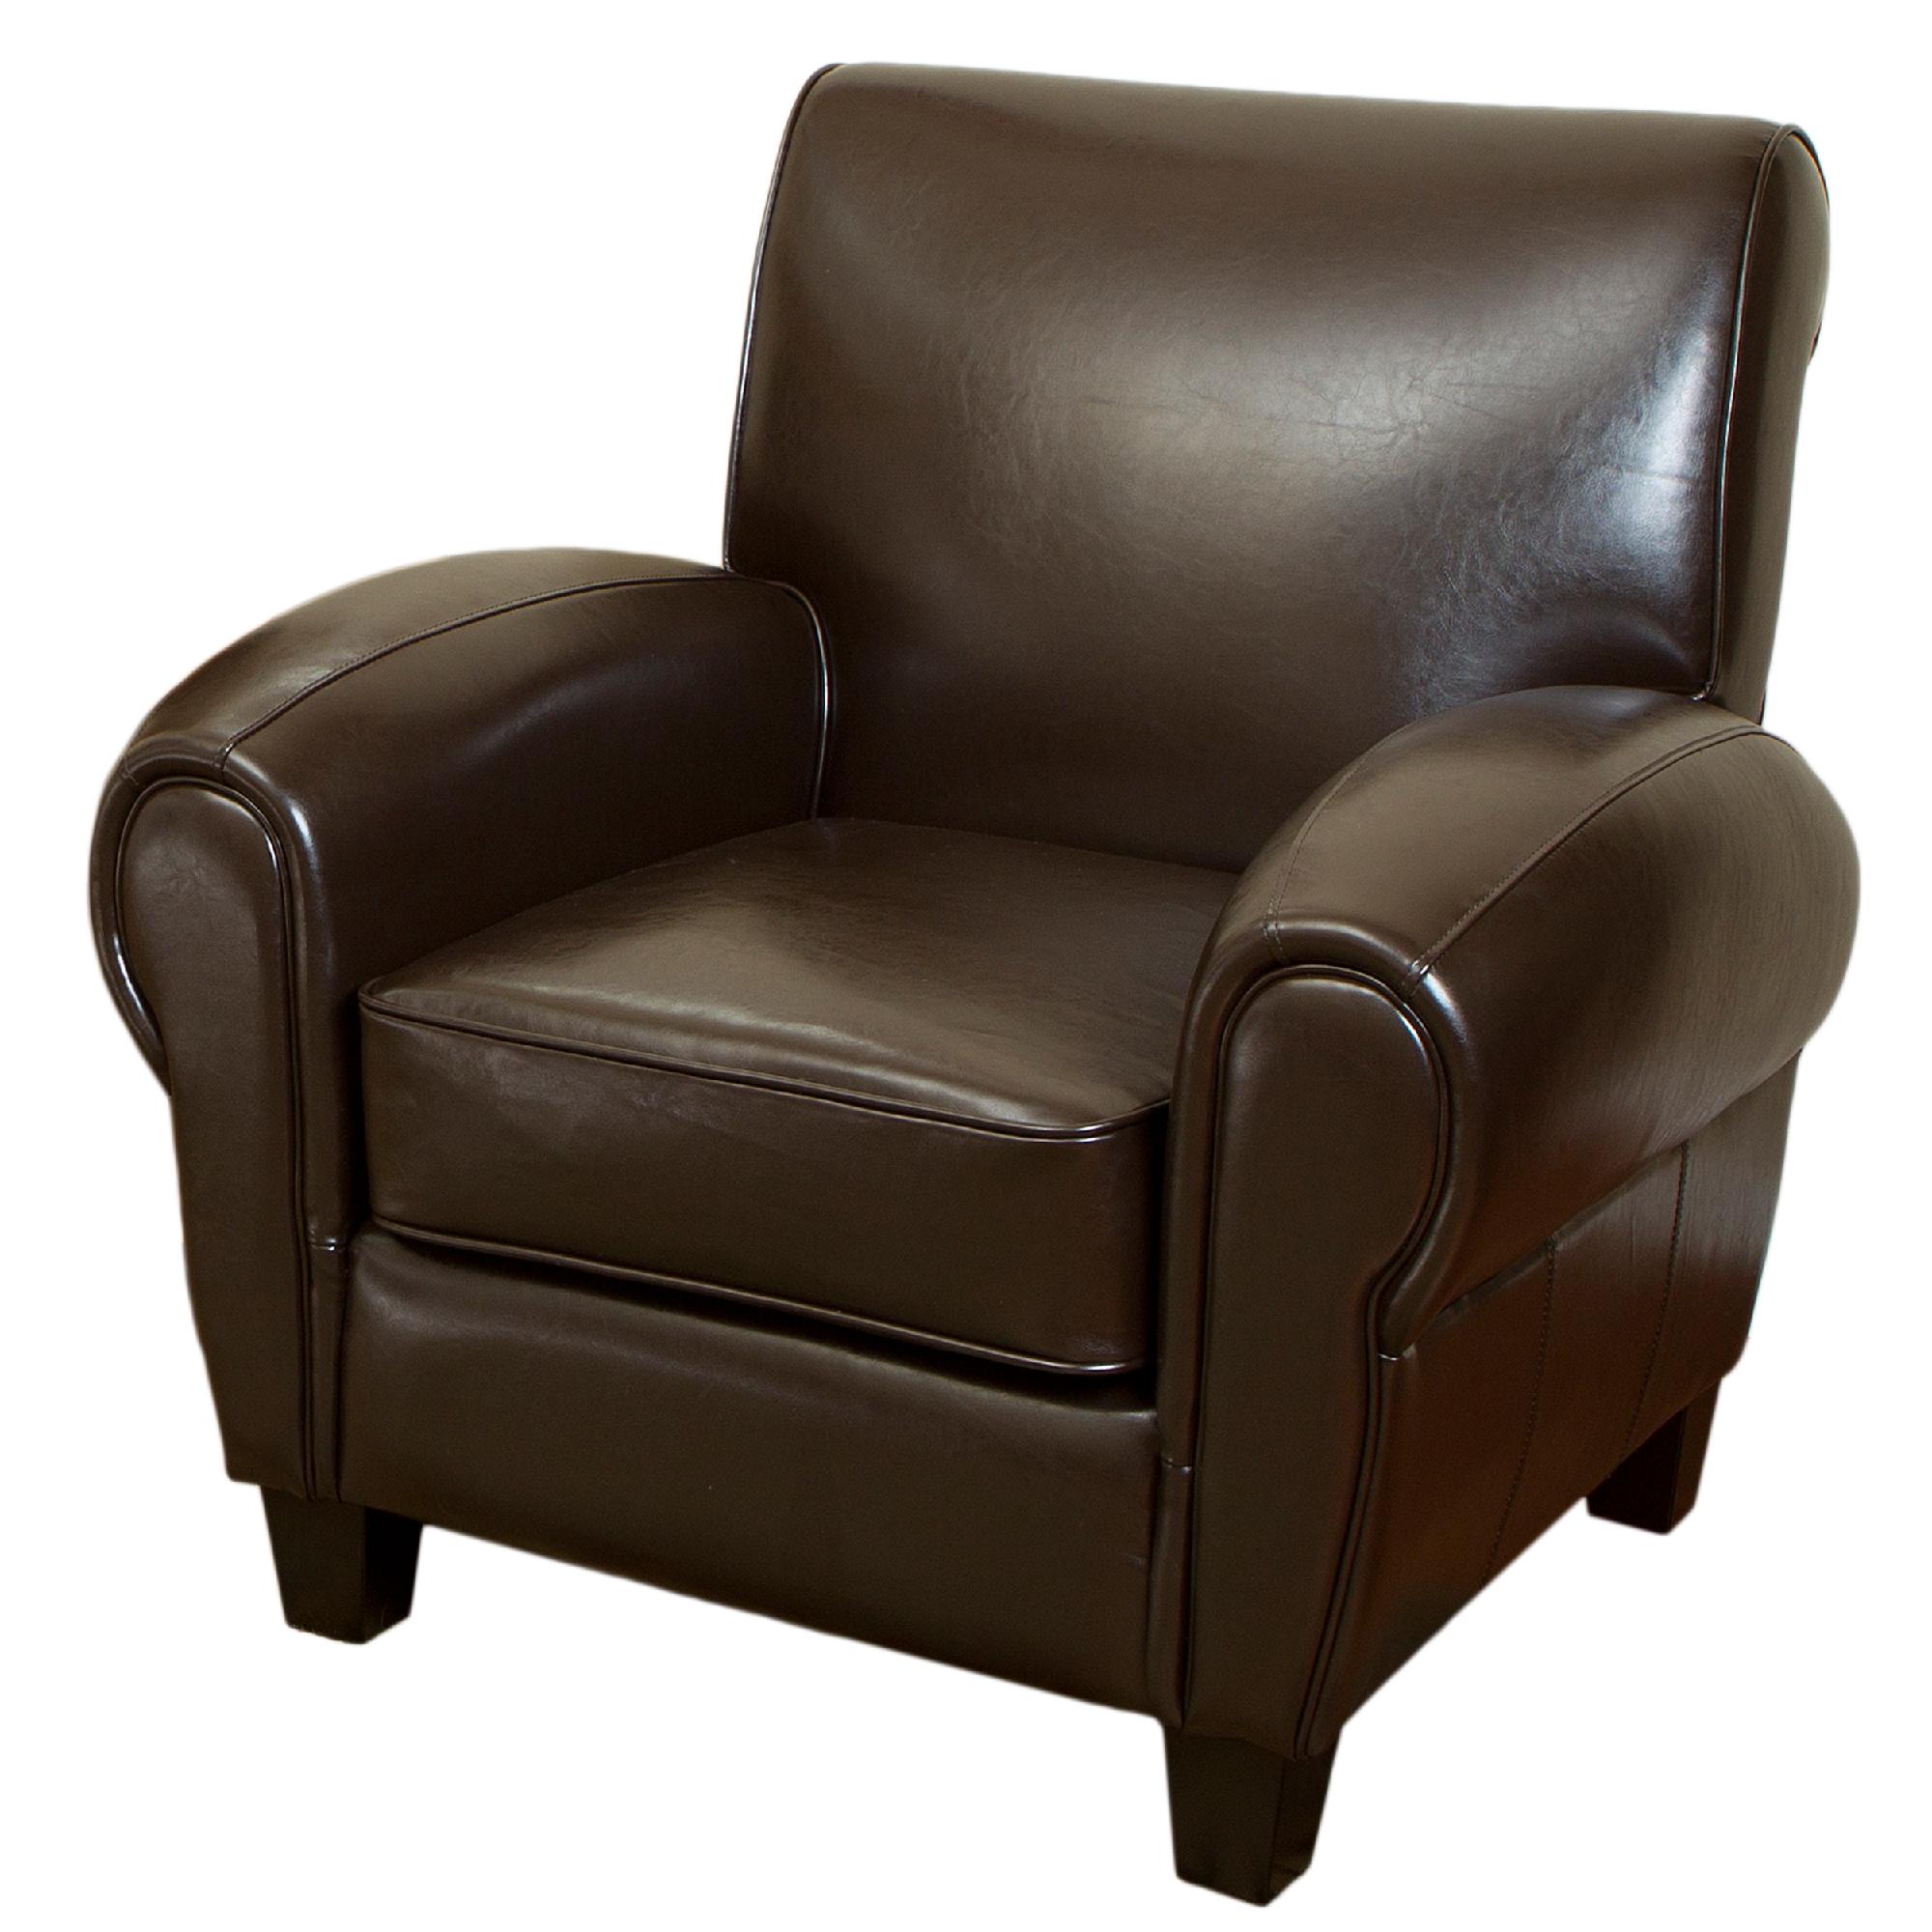 Finley Chocolate Brown Club Chair